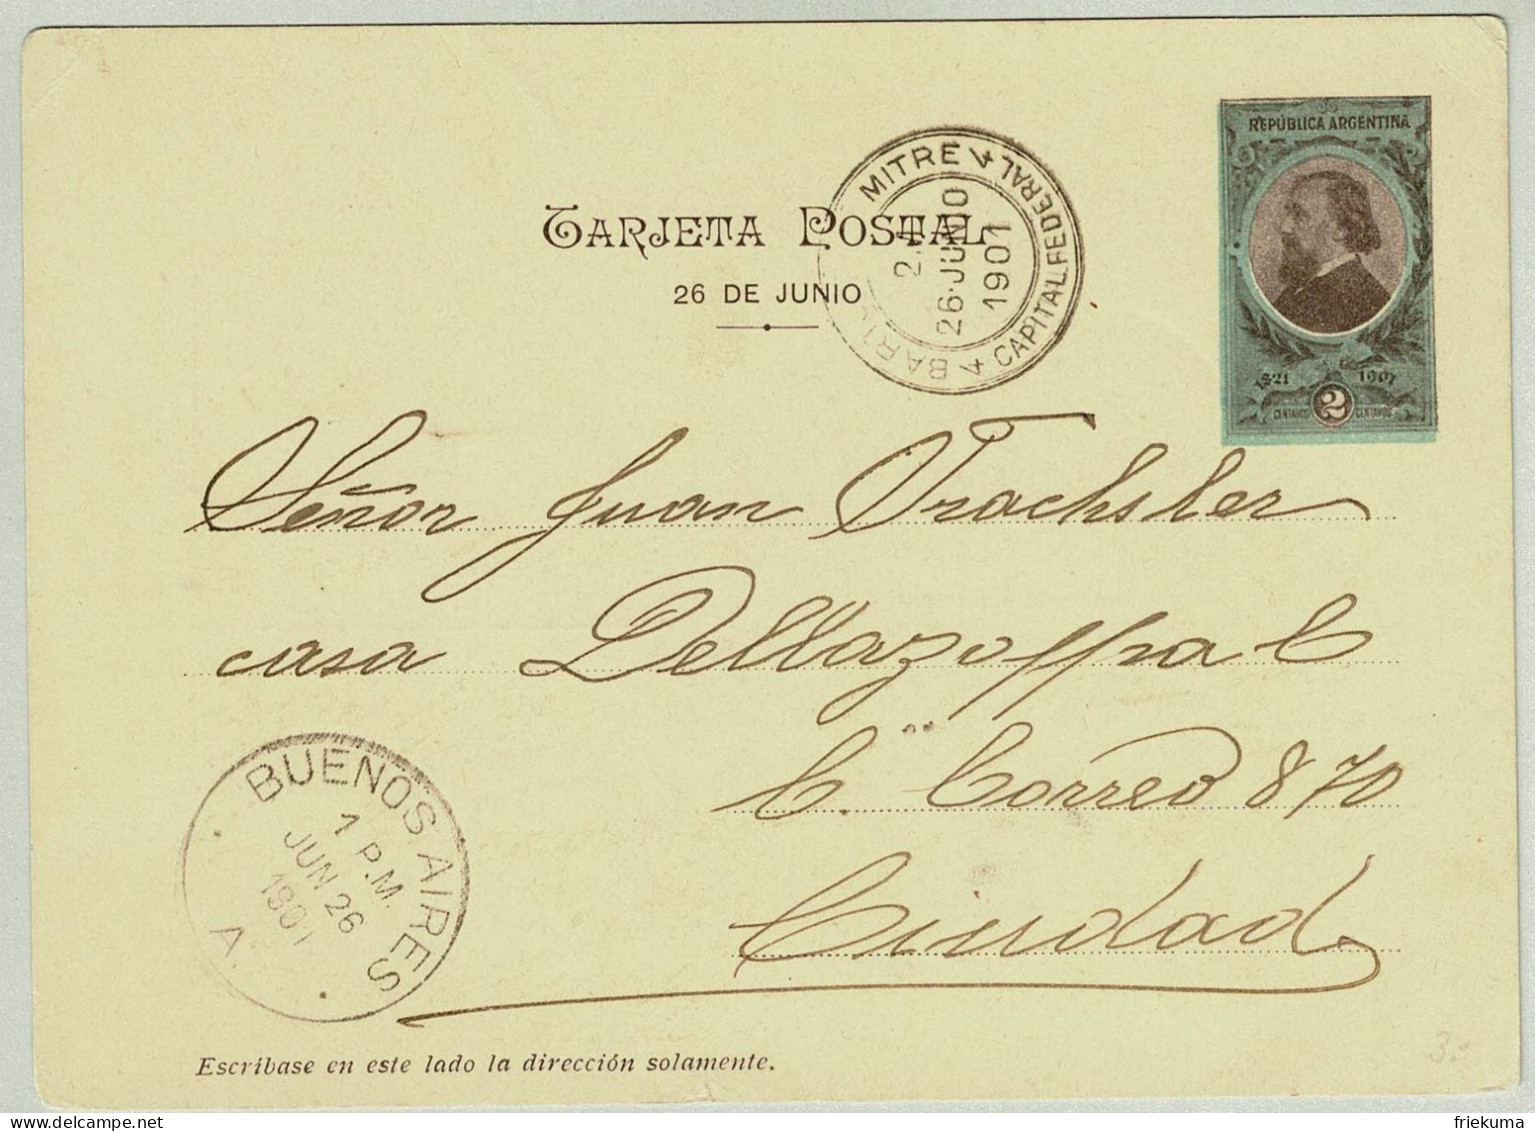 Argentinien / Argentina 1901, Tarjeta Postal Mit Bildzudruck Panzerkreuzer Acorazado Belgrano - Ganzsachen